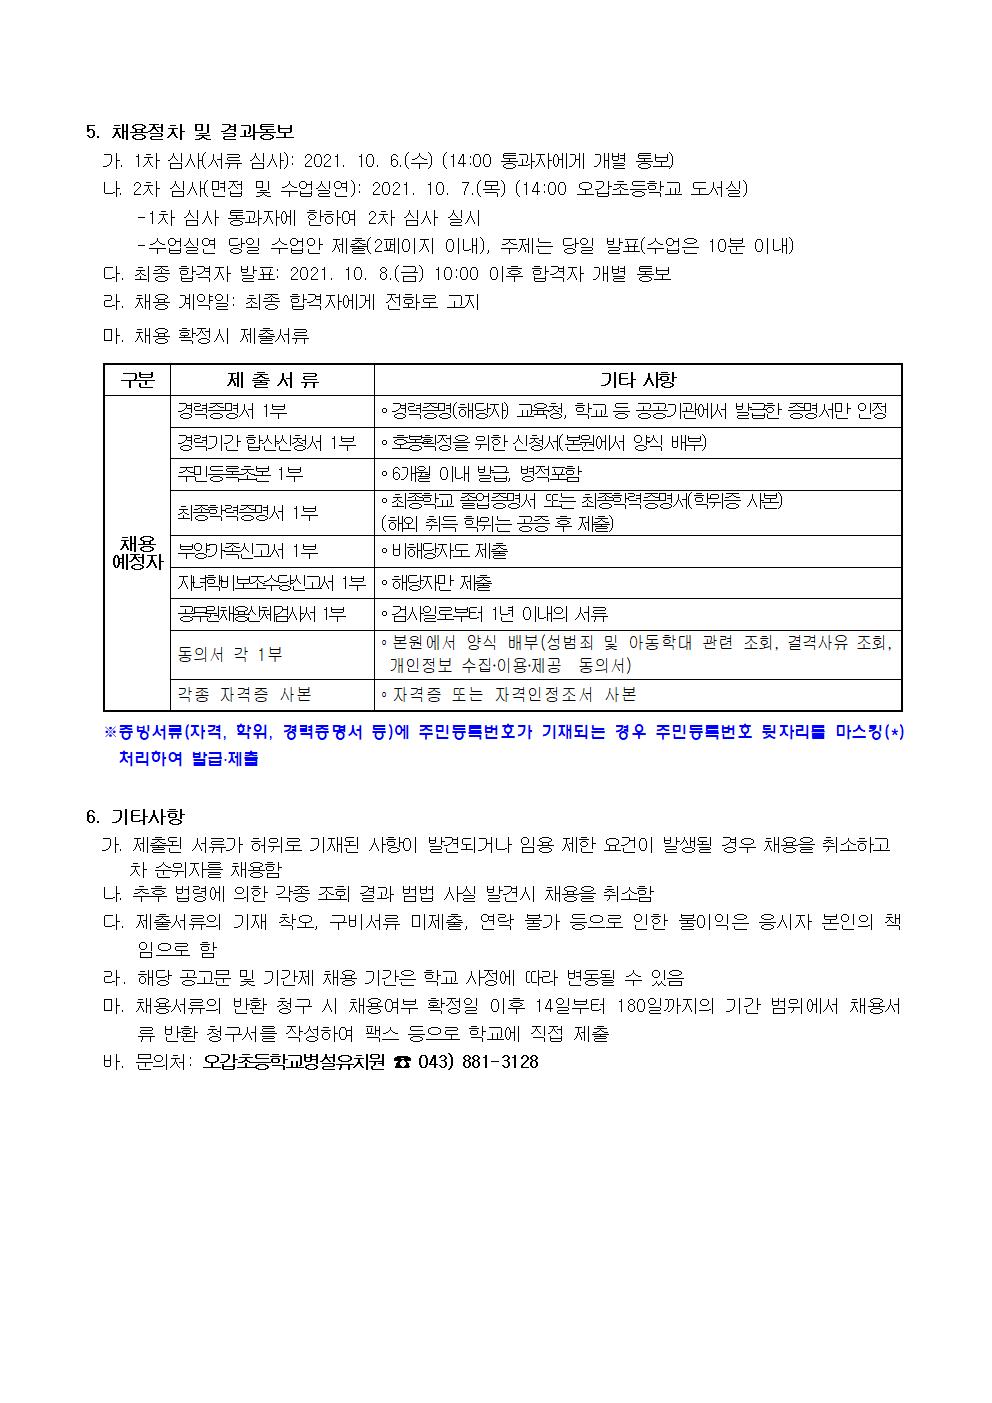 2021. 유치원 계약제교원(시간제기간제교원) 채용 공고(오갑초병설유)002